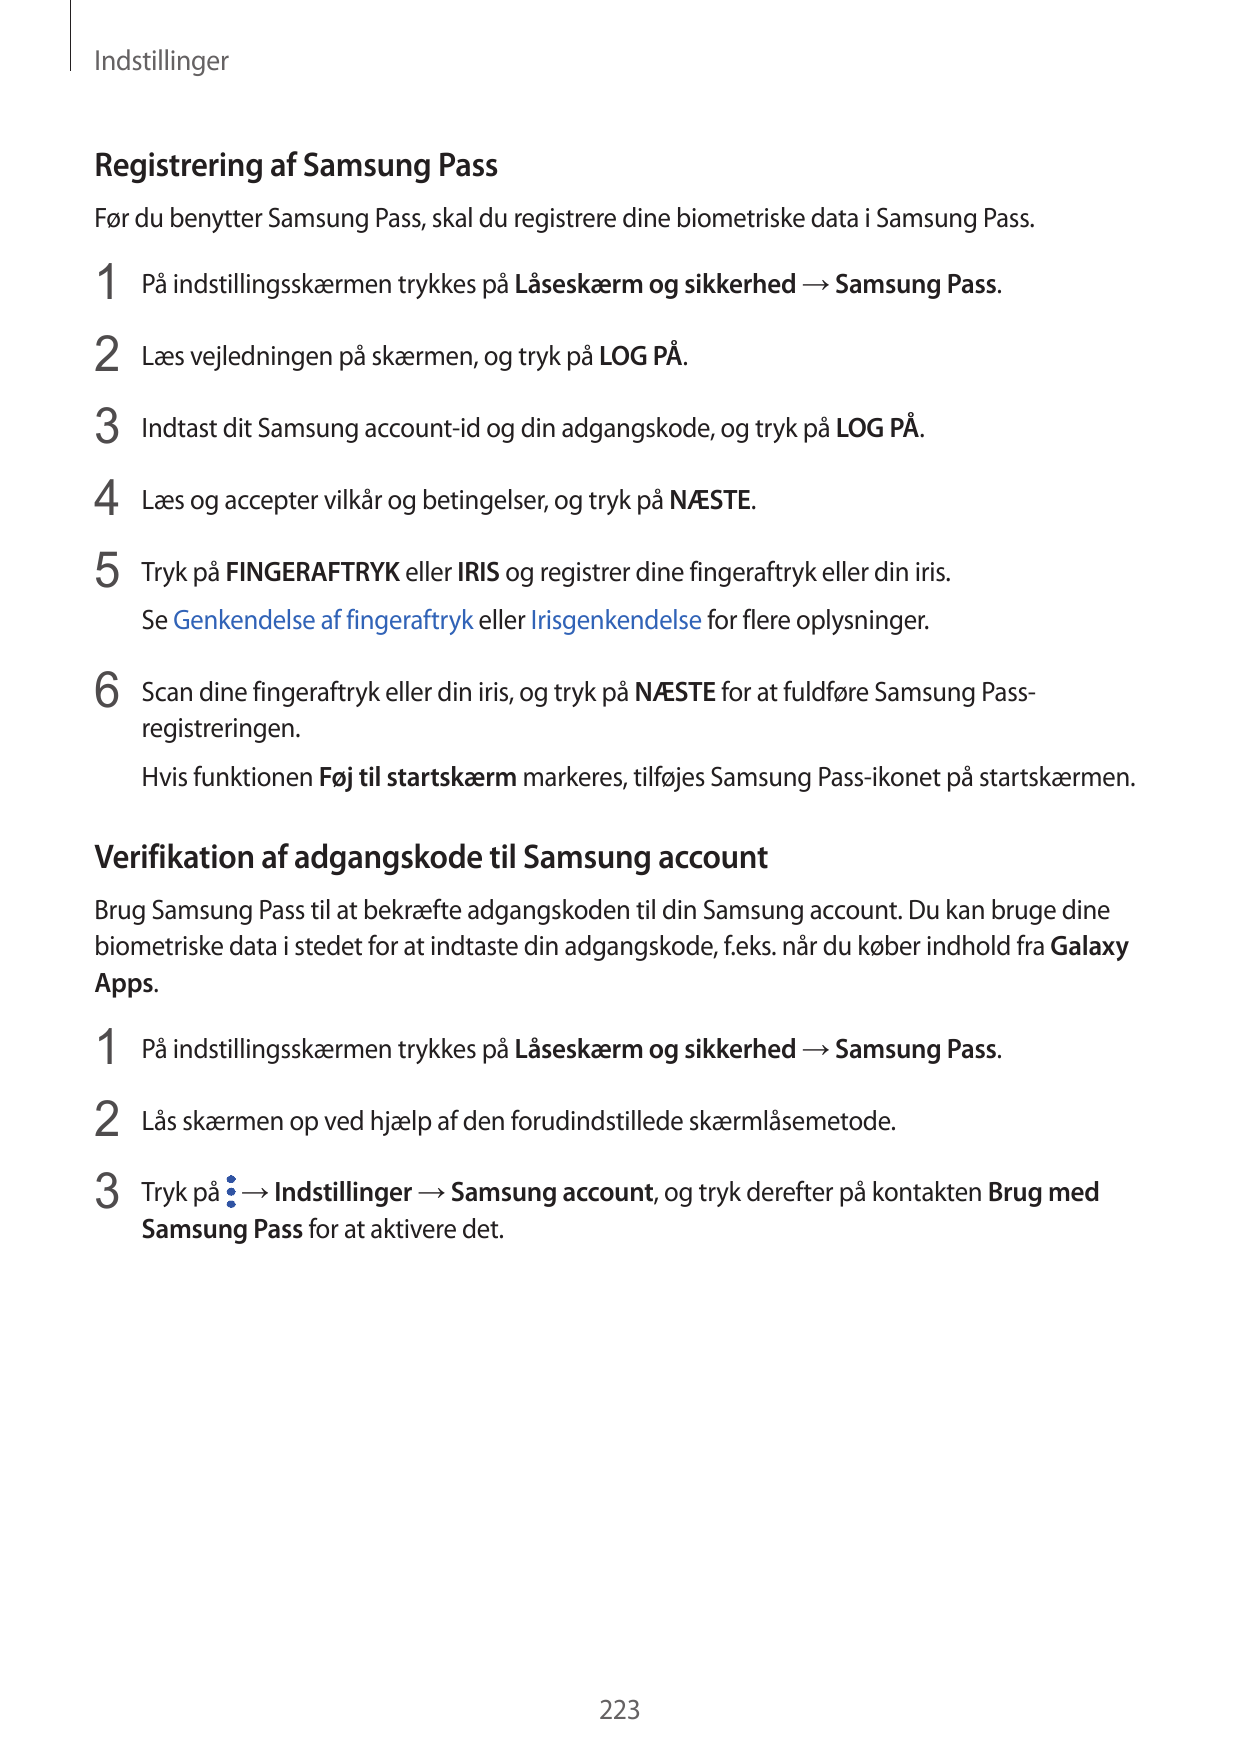 IndstillingerRegistrering af Samsung PassFør du benytter Samsung Pass, skal du registrere dine biometriske data i Samsung Pass.1